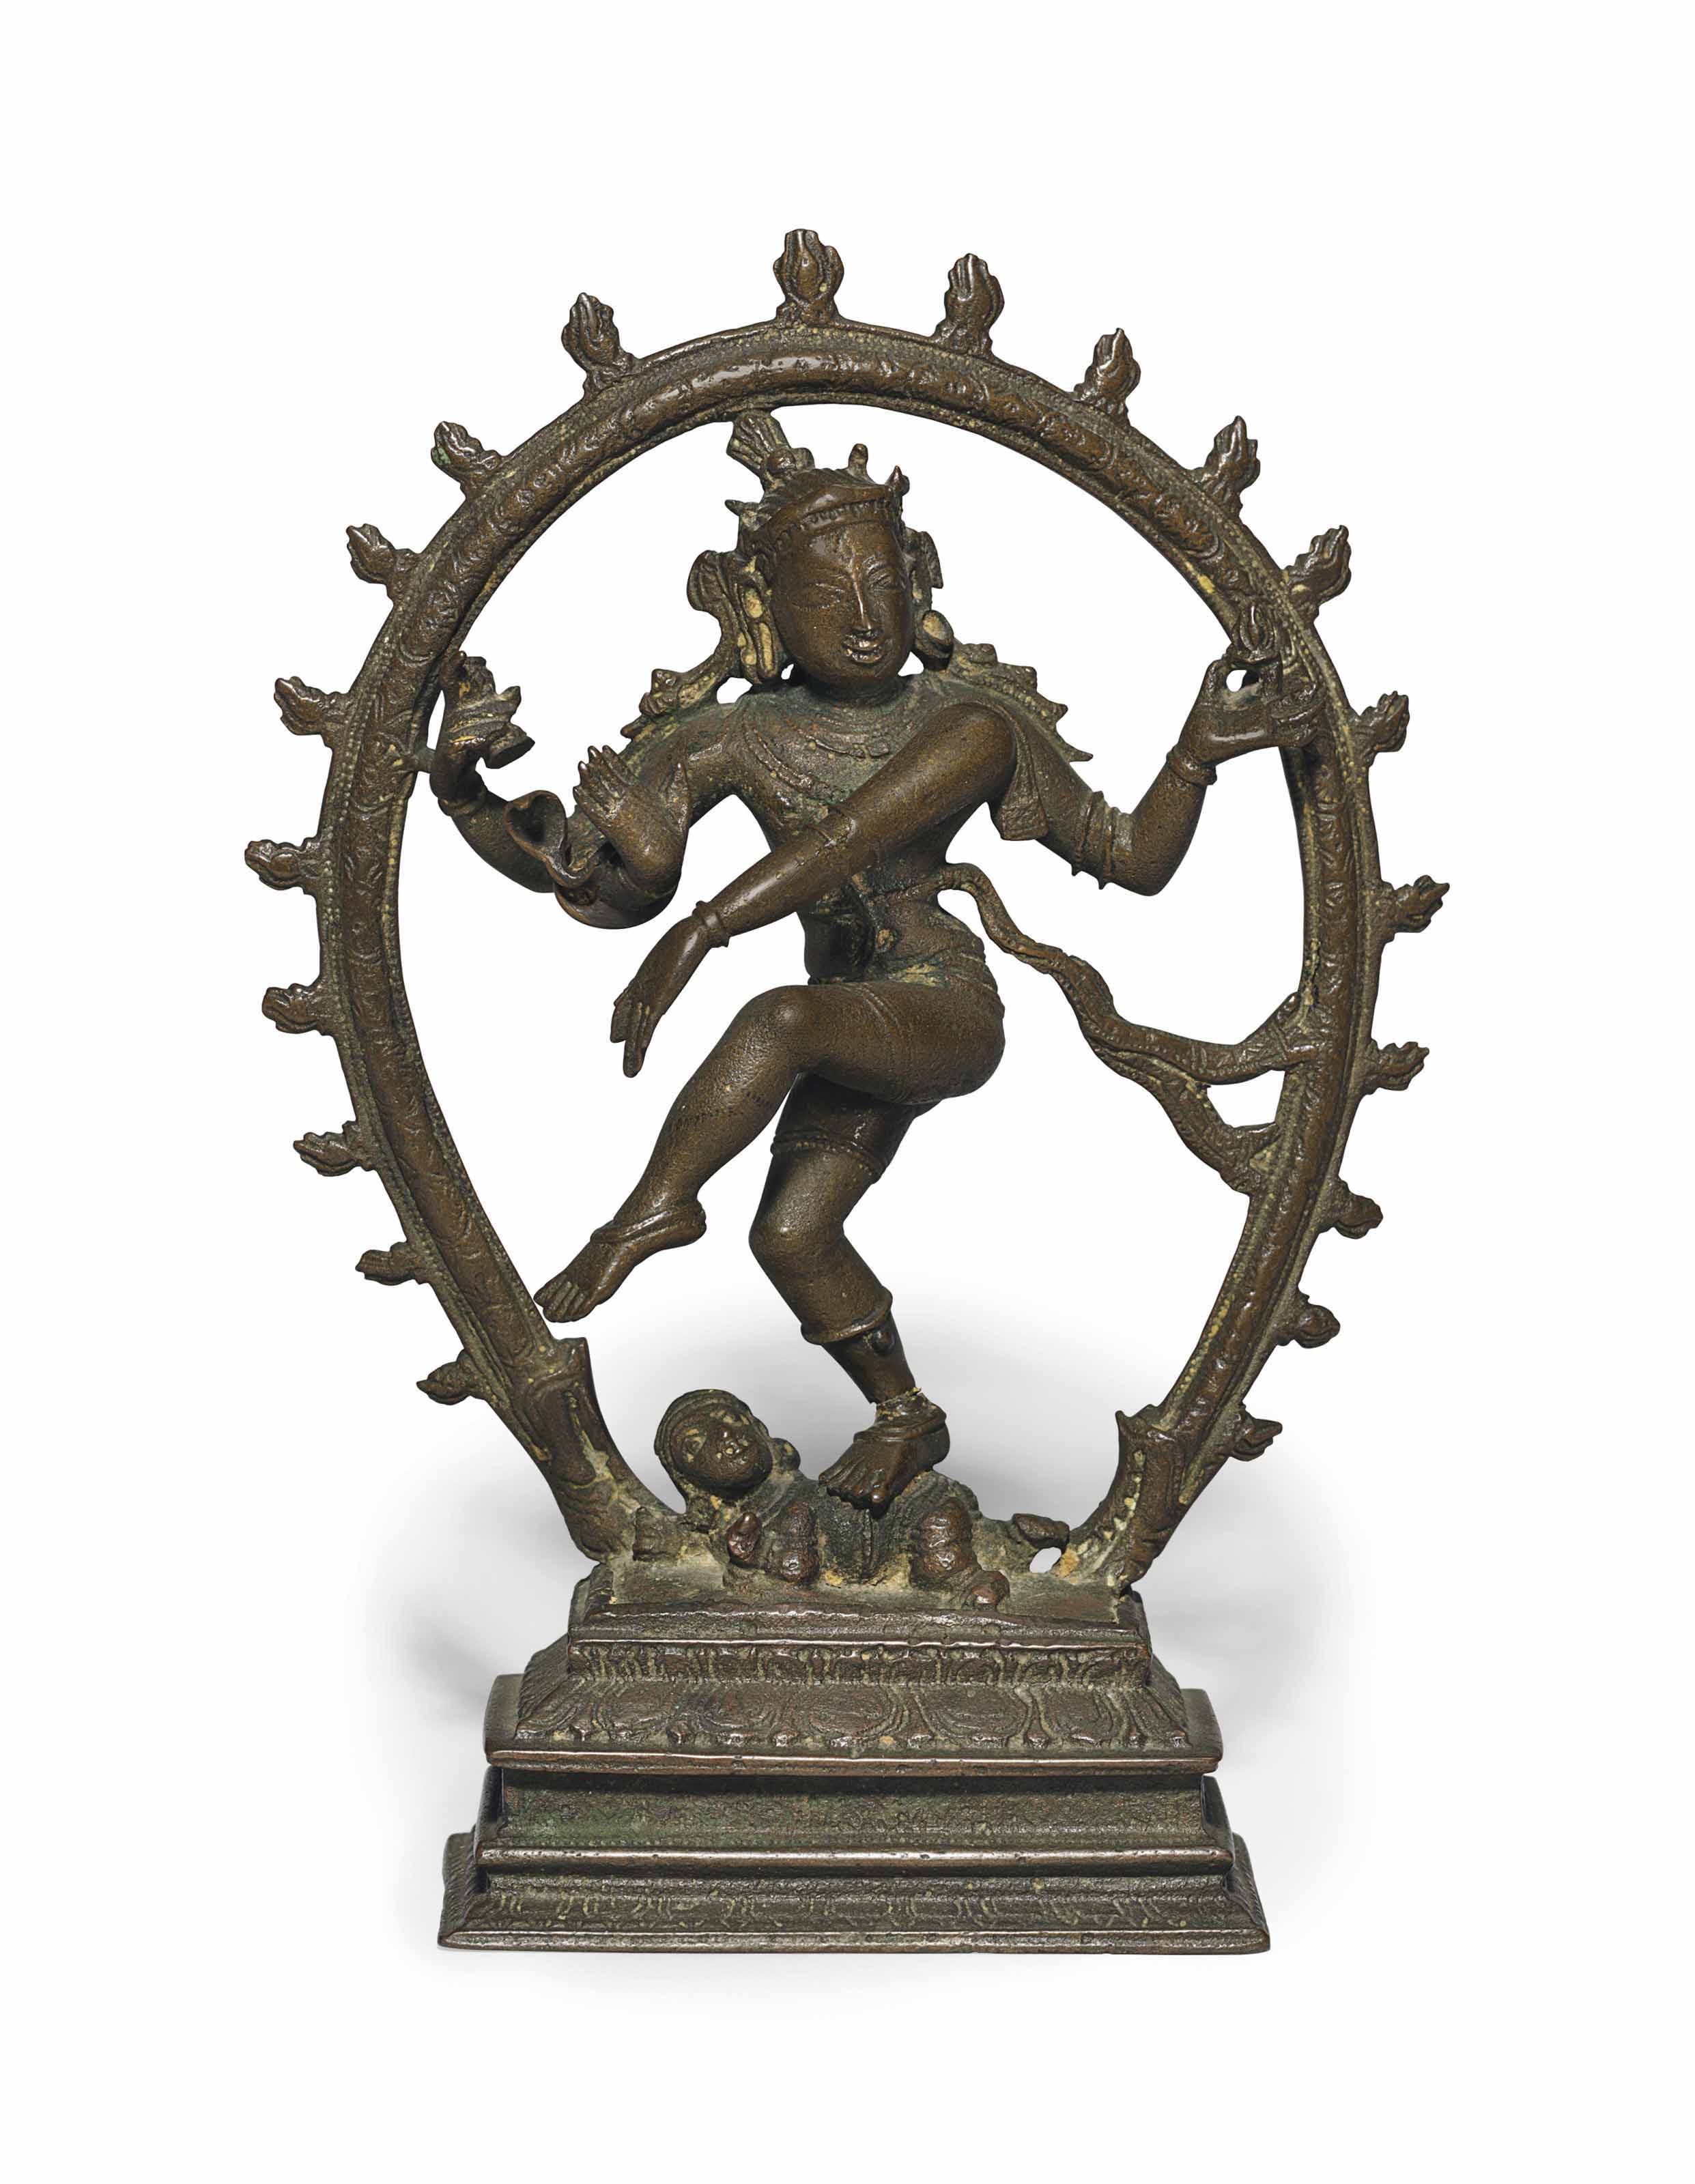 印度南部 泰米爾納德邦 毗奢耶那伽羅王朝 十五世紀 濕婆納塔羅闍銅像